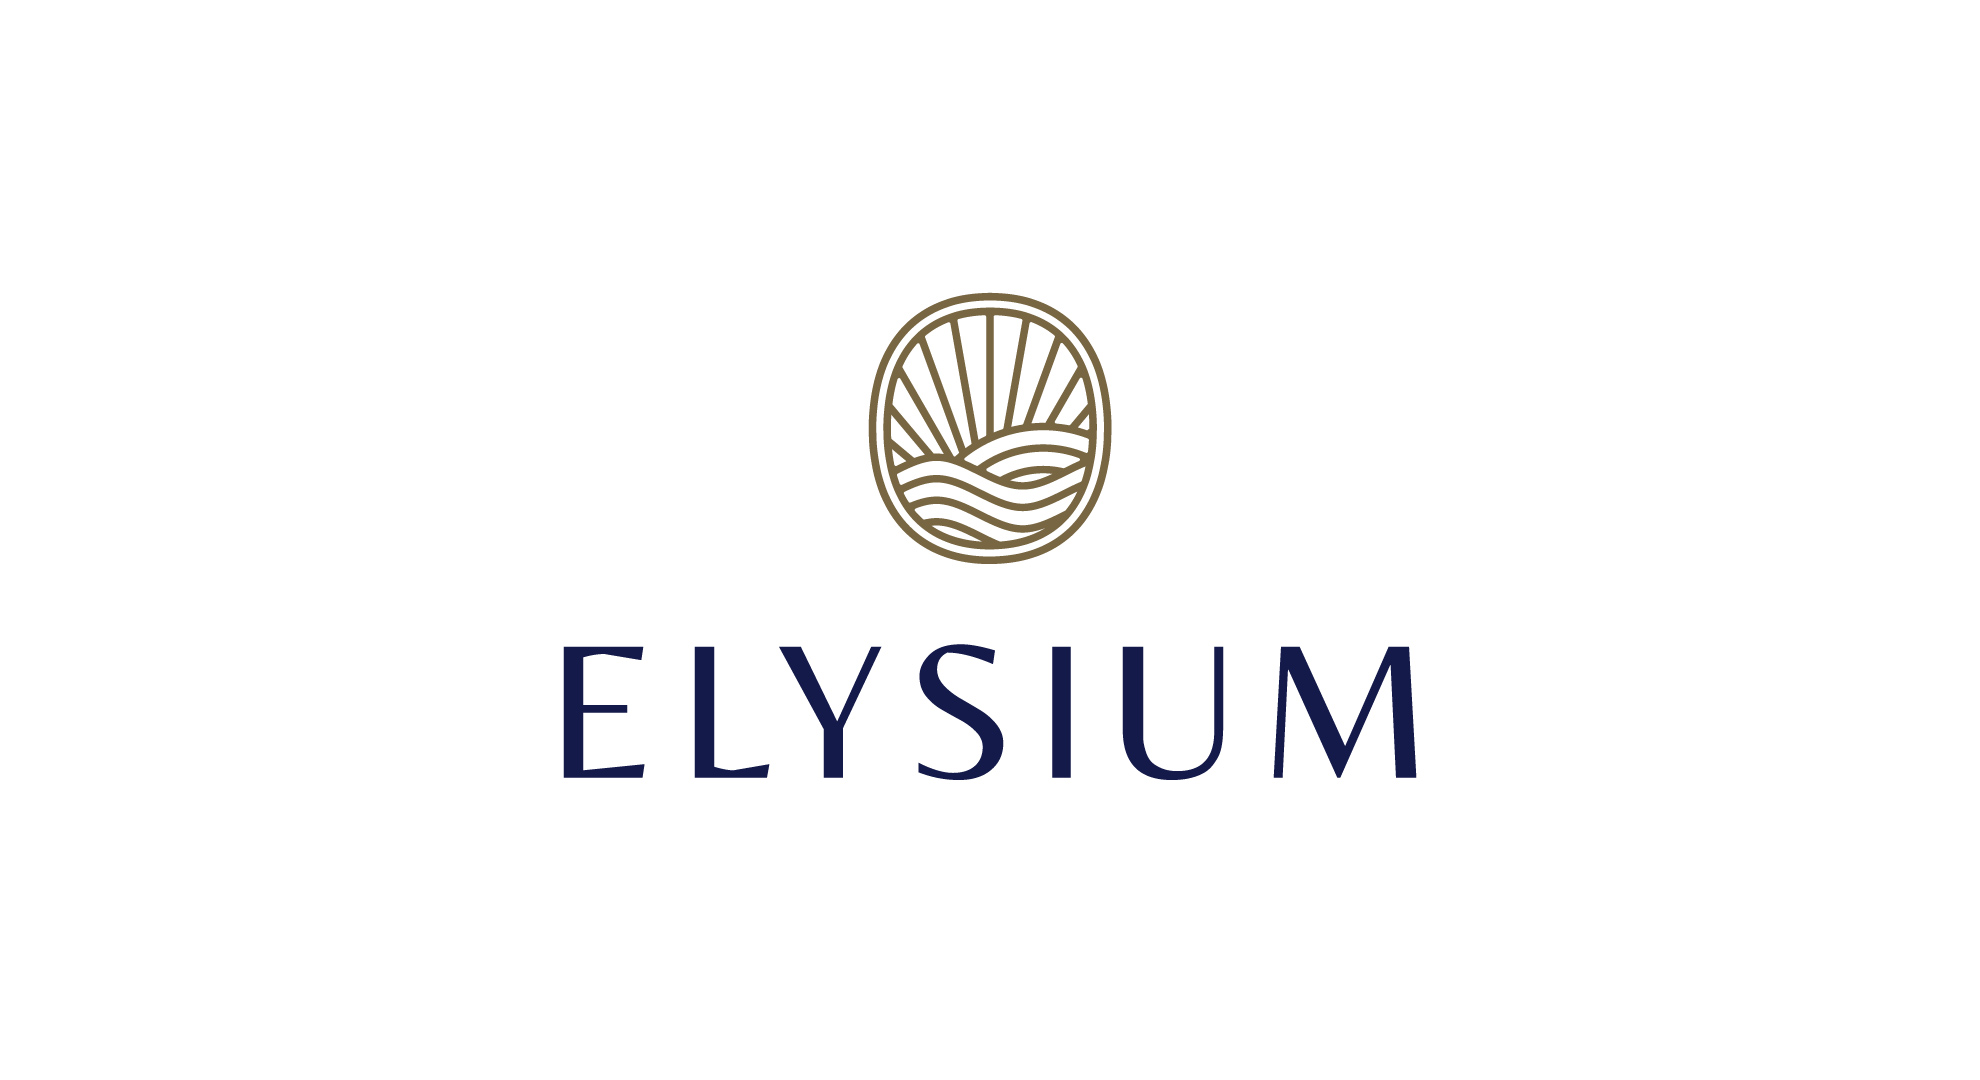 Elysium logo design